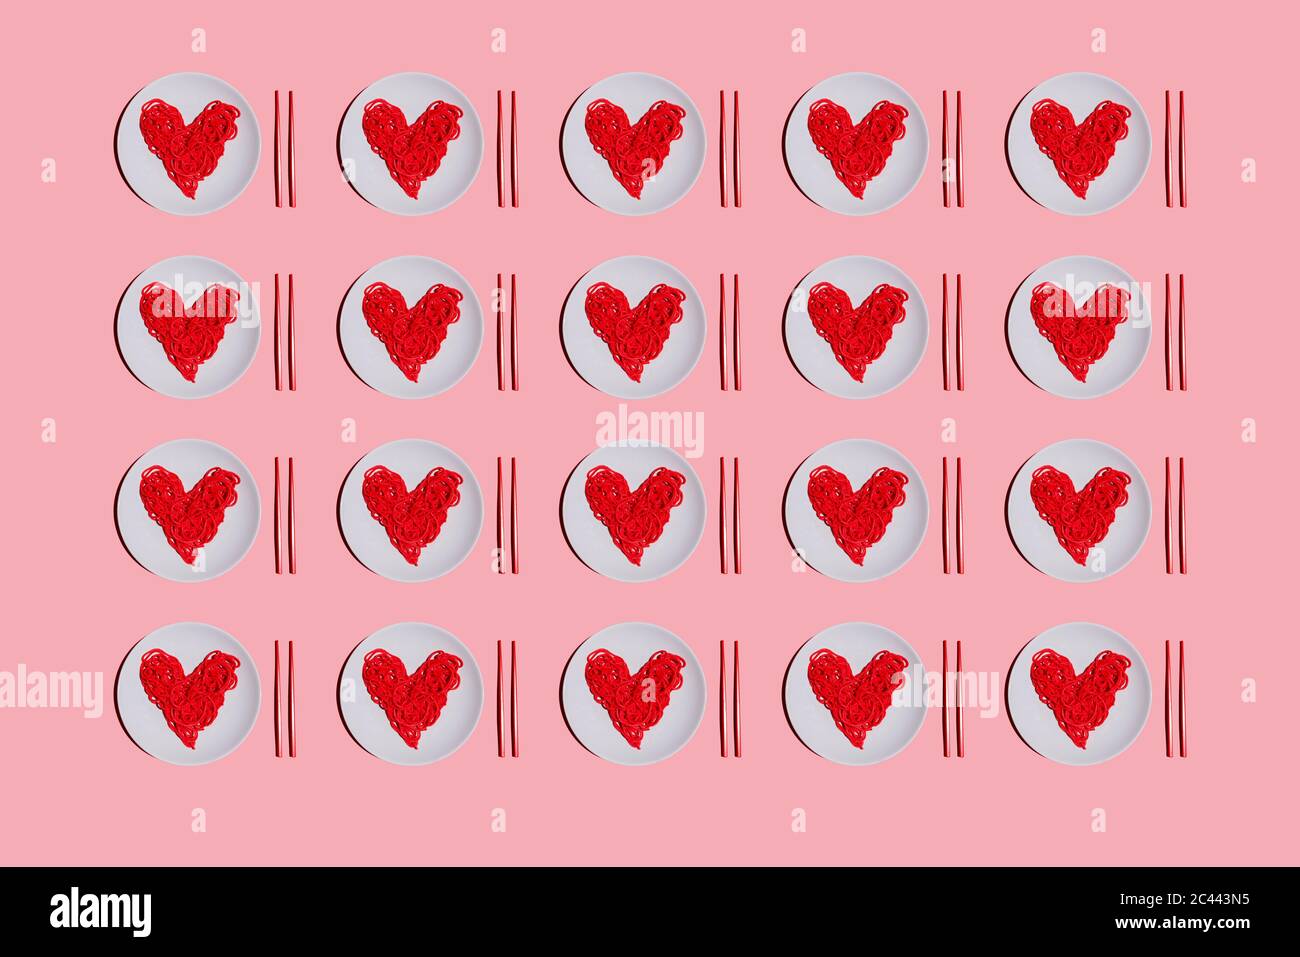 Motif de plaques avec spaghetti en forme de cœur de couleur rouge sur fond rose Banque D'Images